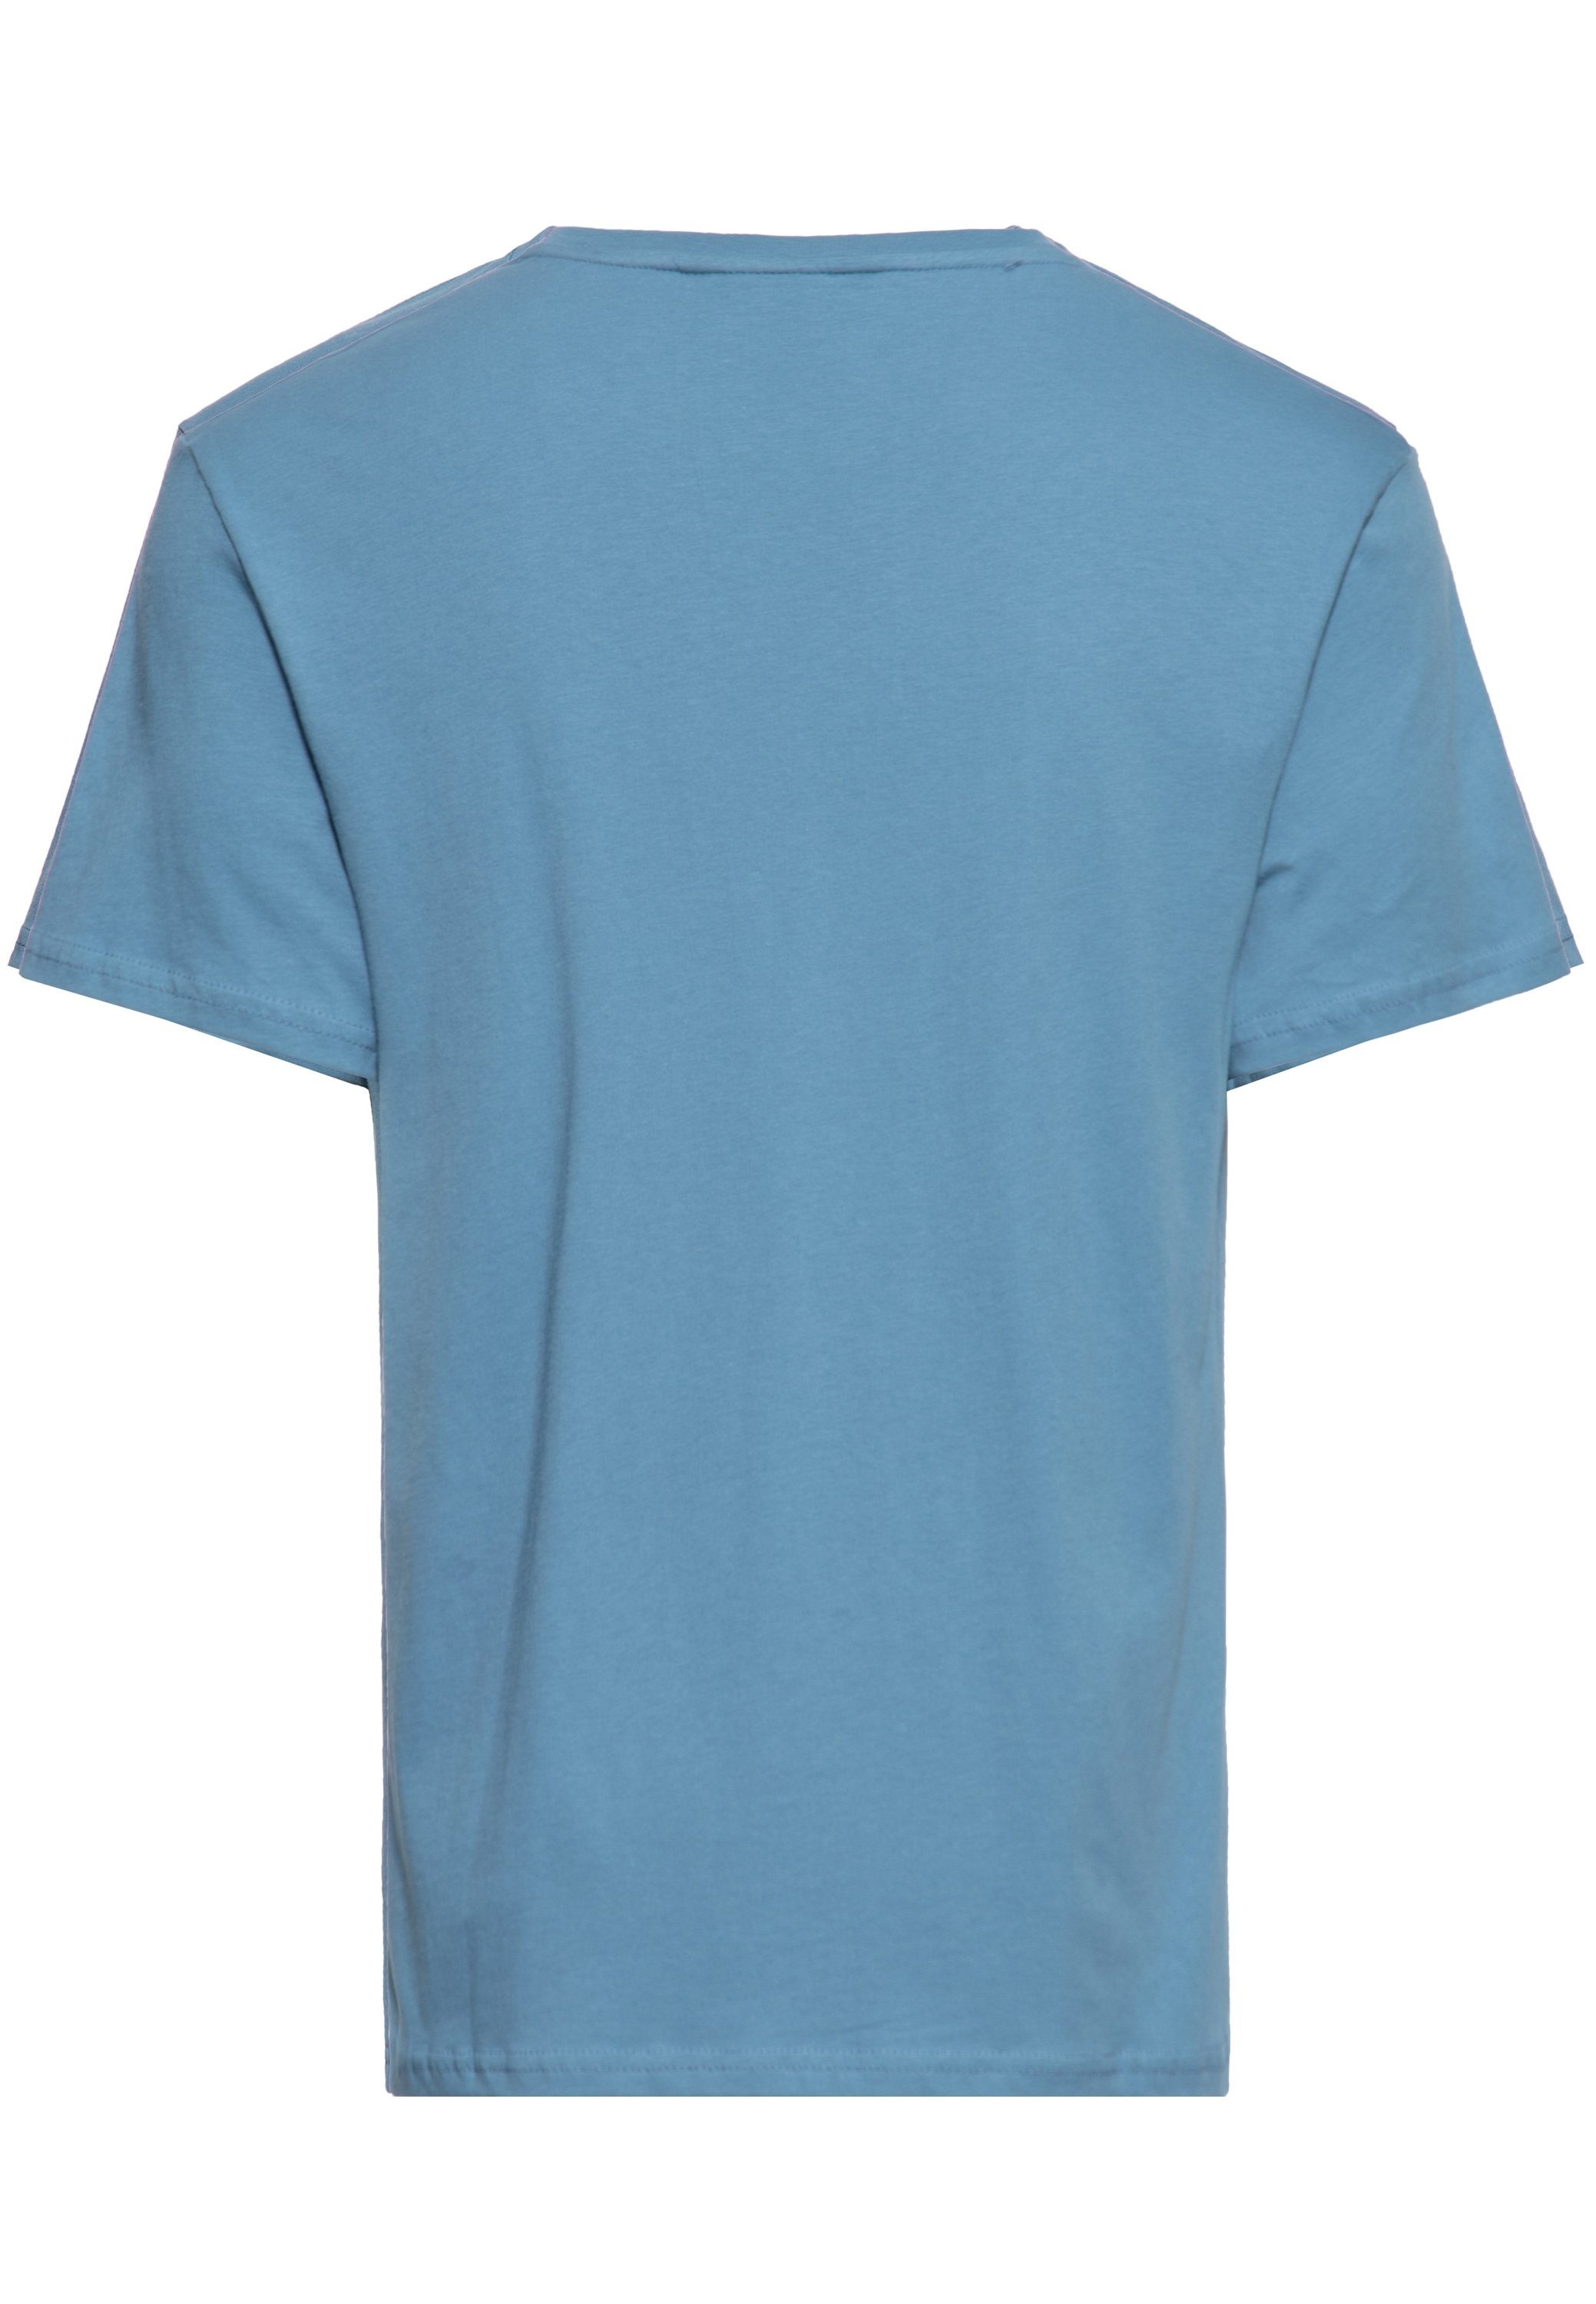 Print-Shirt Tiki-Motiv Kahuna KingKerosin mit Killer blau